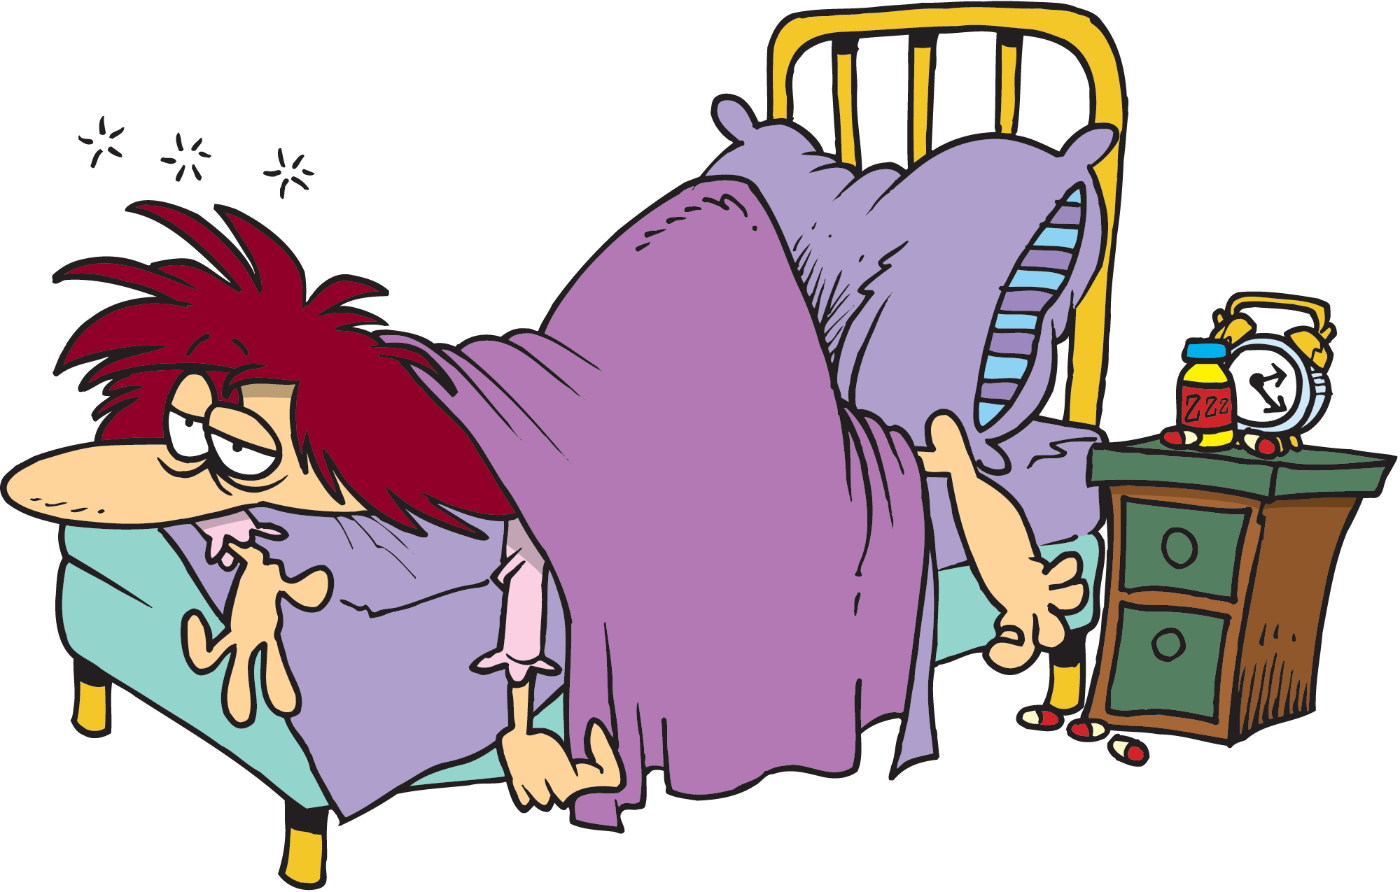 Mom i tired can i sleep. Карикатура больной в кровати. Больной человек карикатура. Бессонница карикатура. Уставшая женщина карикатура.